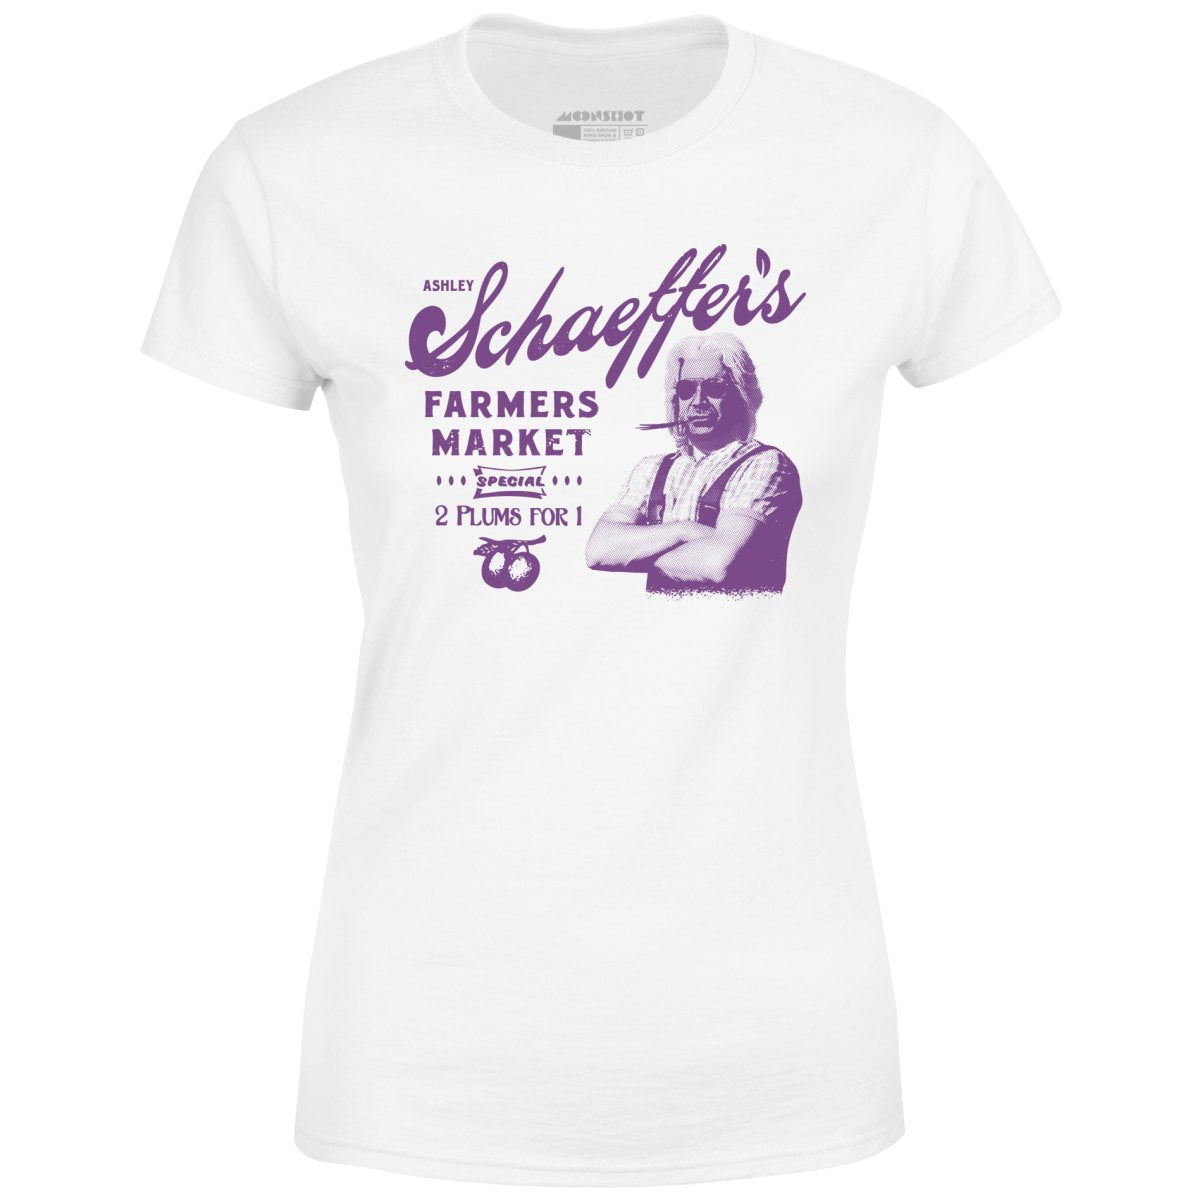 Ashley Schaeffer's Farmers Market - Women's T-Shirt